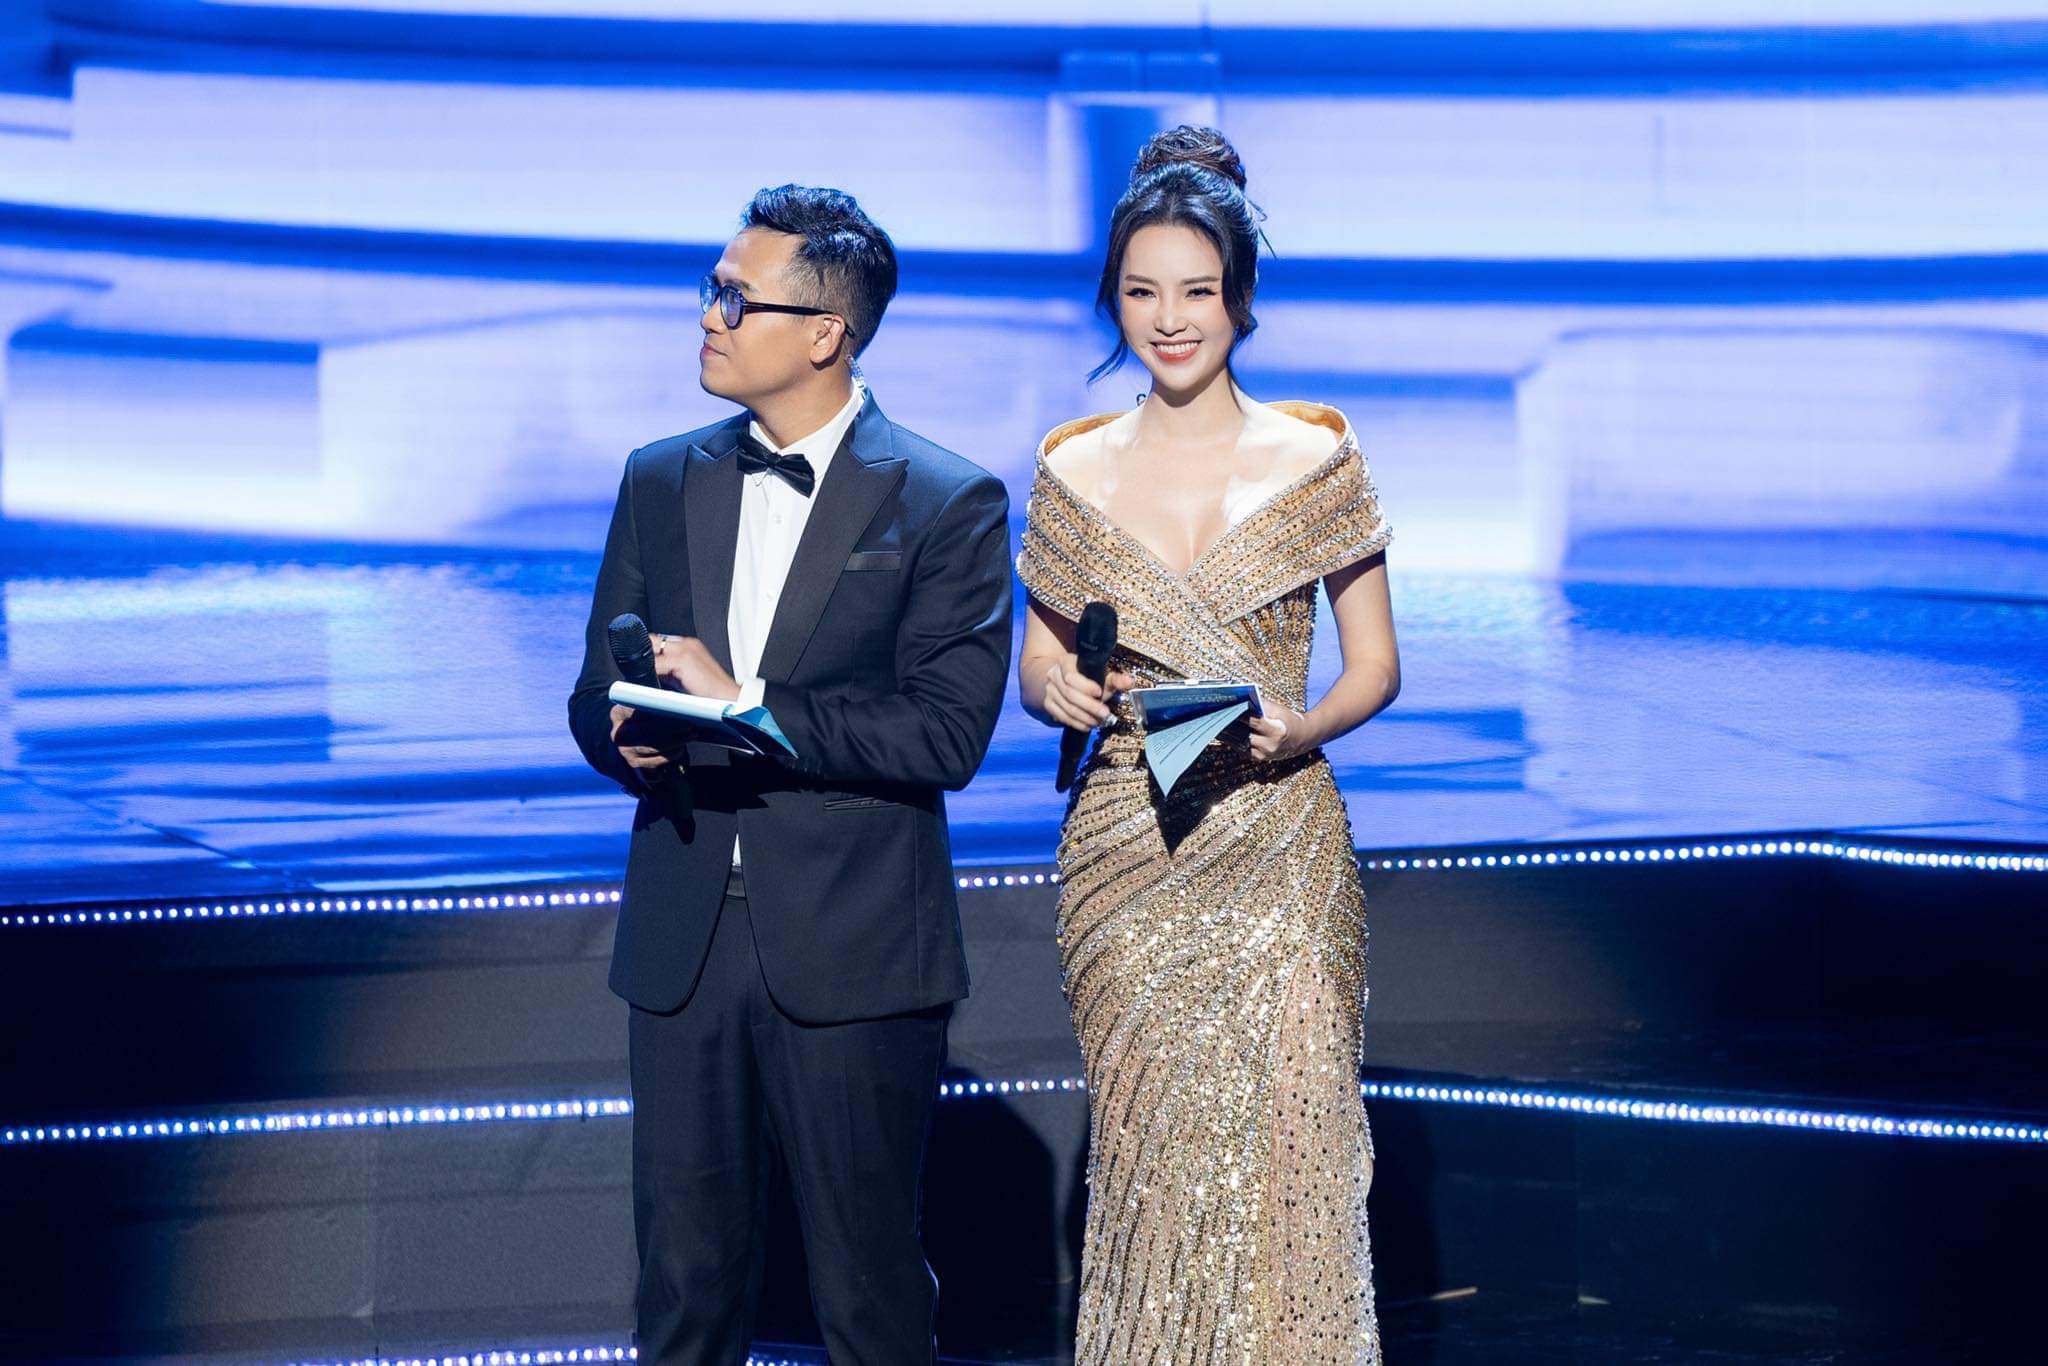 Á hậu Thuỵ Vân trên sân khấu Lễ trao giải Vin Future. Ảnh: Toan Vu